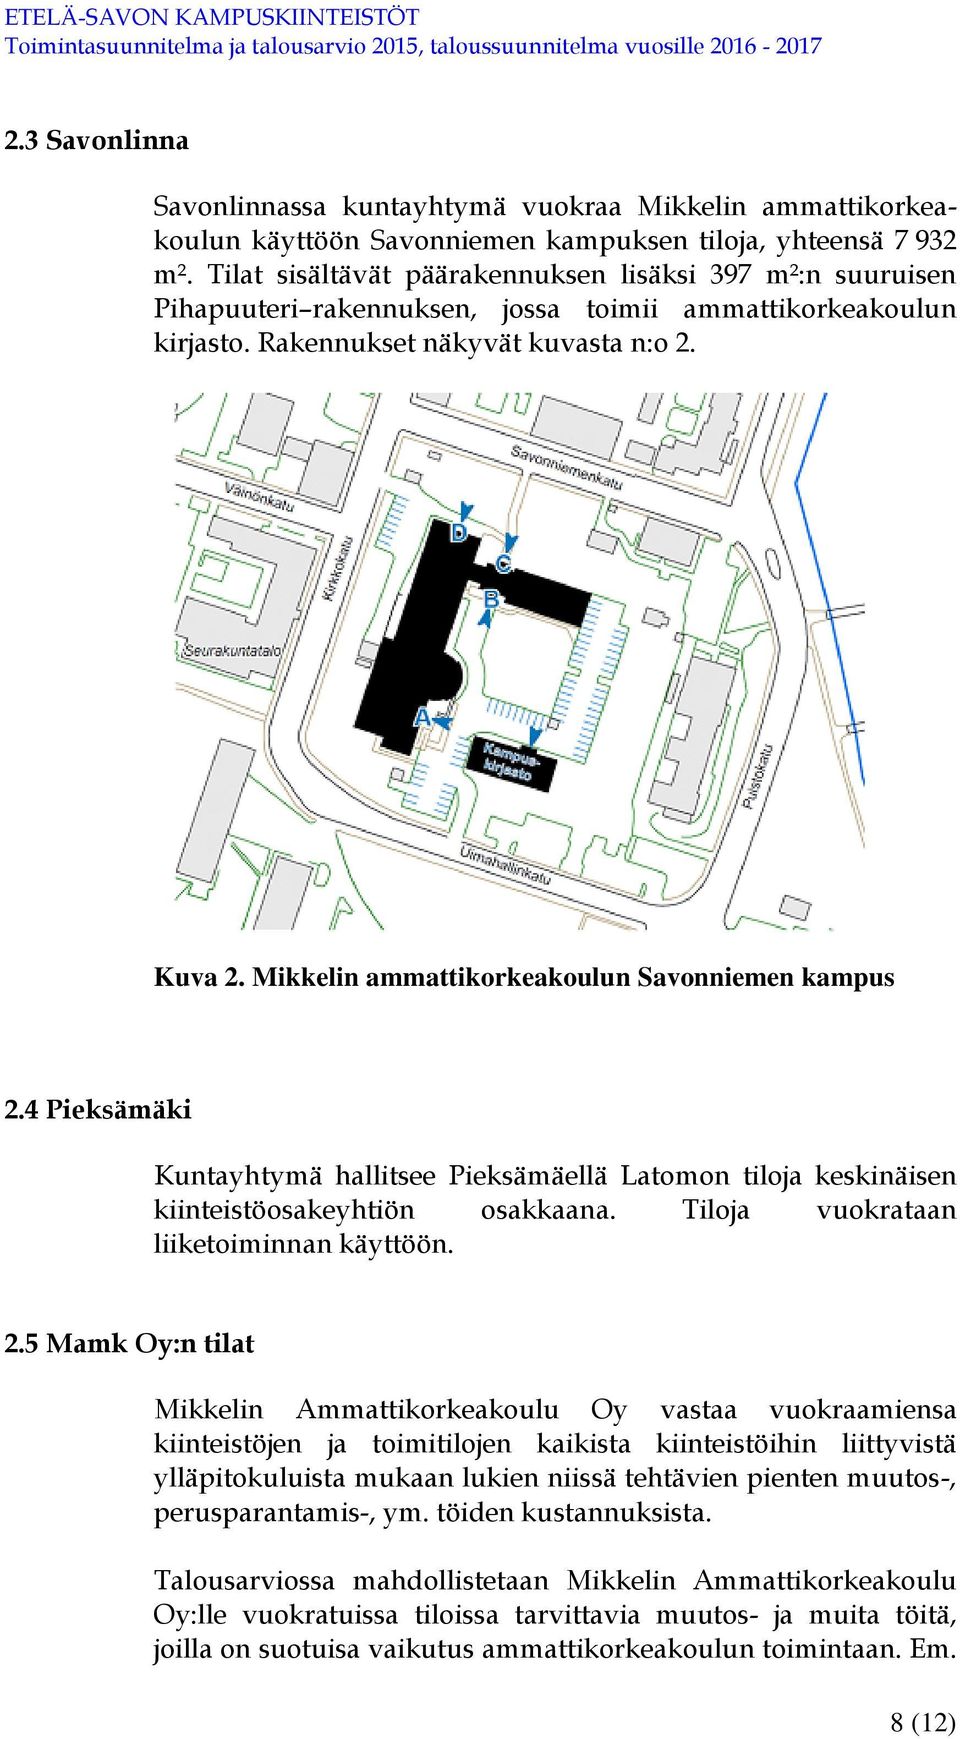 Mikkelin ammattikorkeakoulun Savonniemen kampus 2.4 Pieksämäki Kuntayhtymä hallitsee Pieksämäellä Latomon tiloja keskinäisen kiinteistöosakeyhtiön osakkaana. Tiloja vuokrataan liiketoiminnan käyttöön.